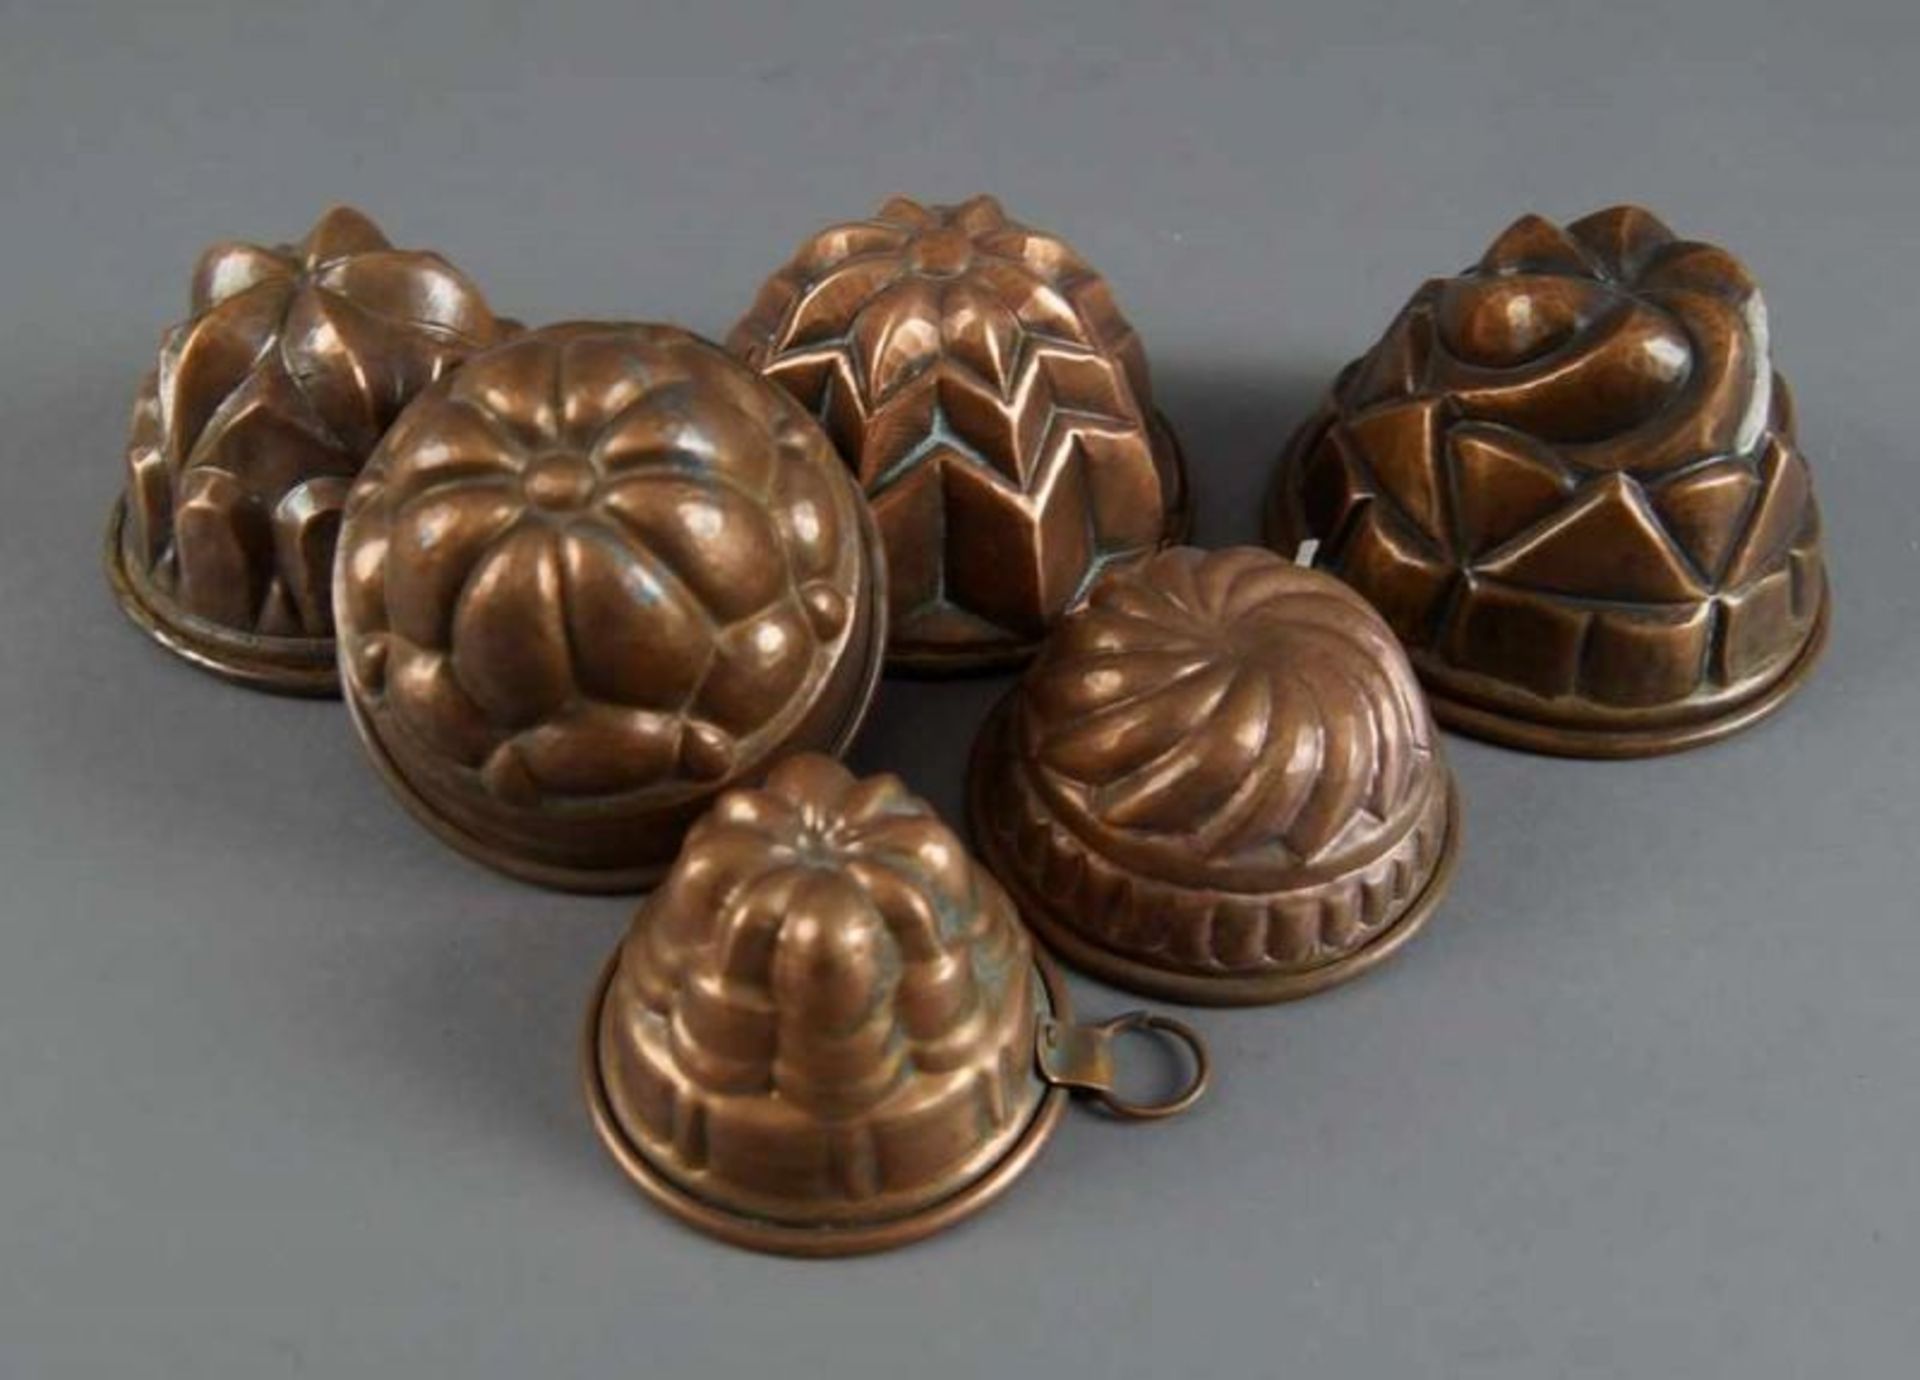 Sechs Miniatur - Guglhupf/Kuchenformen aus Kupfer, Durchmesser von 8 - 13 cm 20.17 % buyer's premium